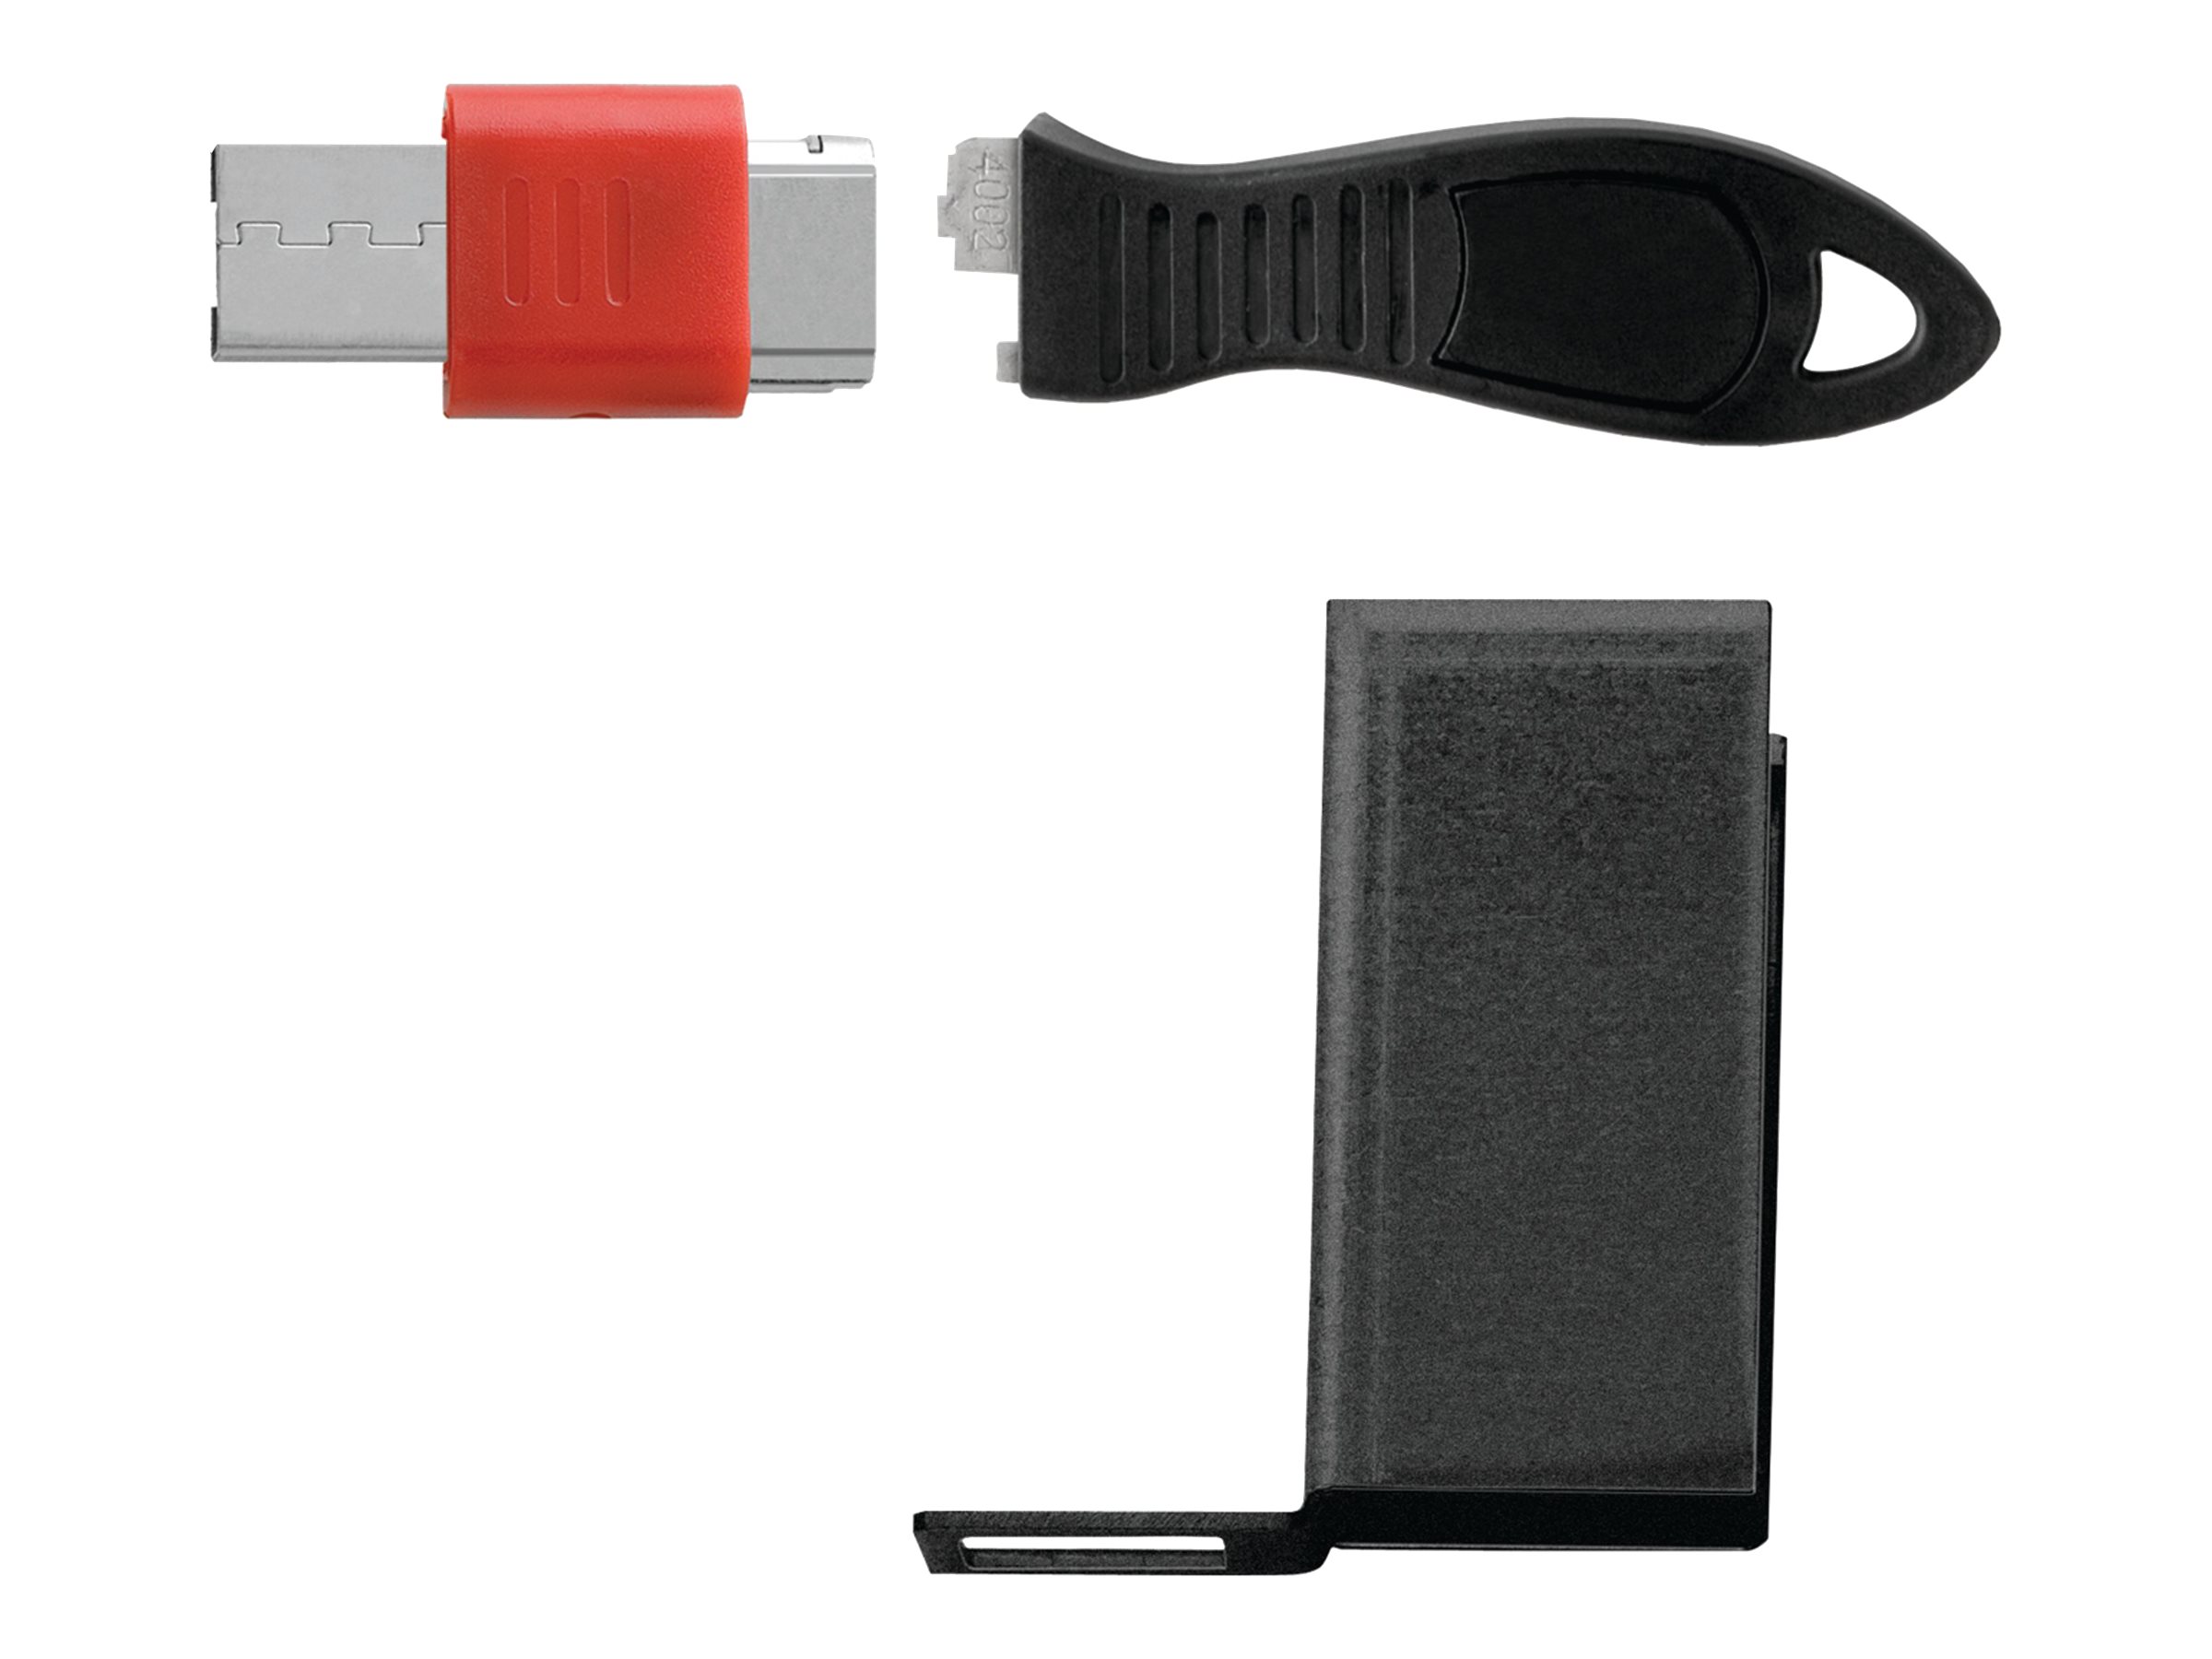 Kensington USB Port Lock with Cable Guard - Rectangular - Bloqueur de port USB - K67914WW - Accessoires pour ordinateur de bureau